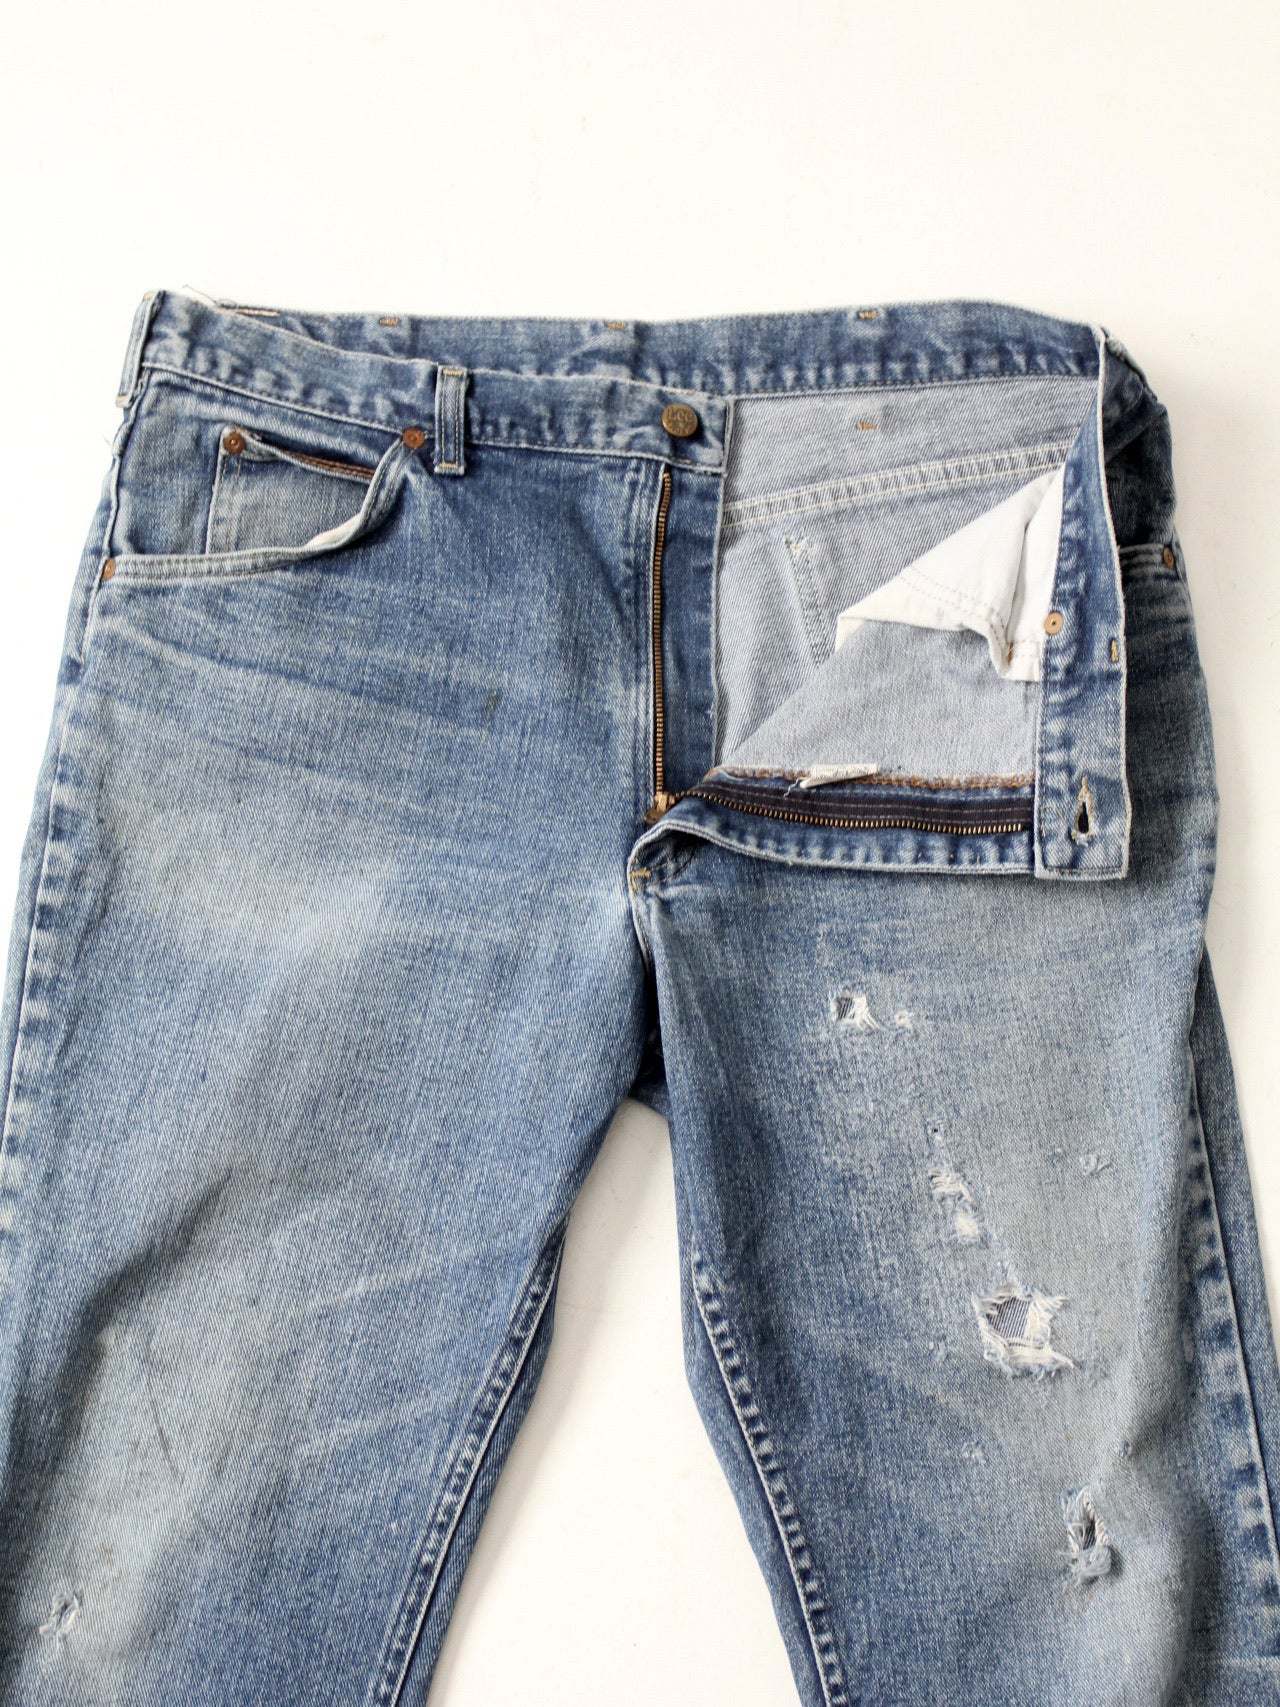 vintage Lee Riders denim jeans 37 x 29 – 86 Vintage